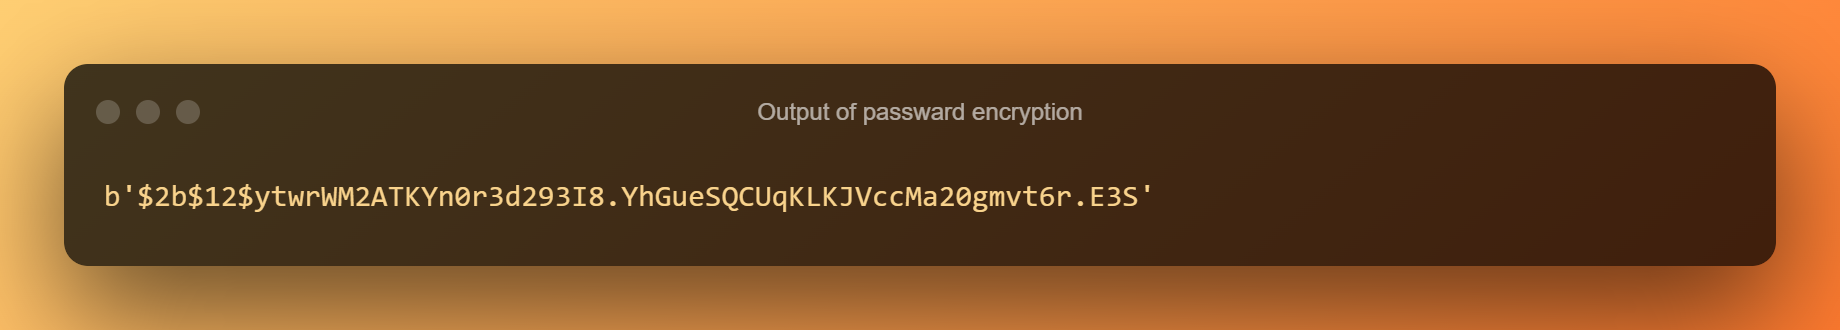 Output Of Password Encryption